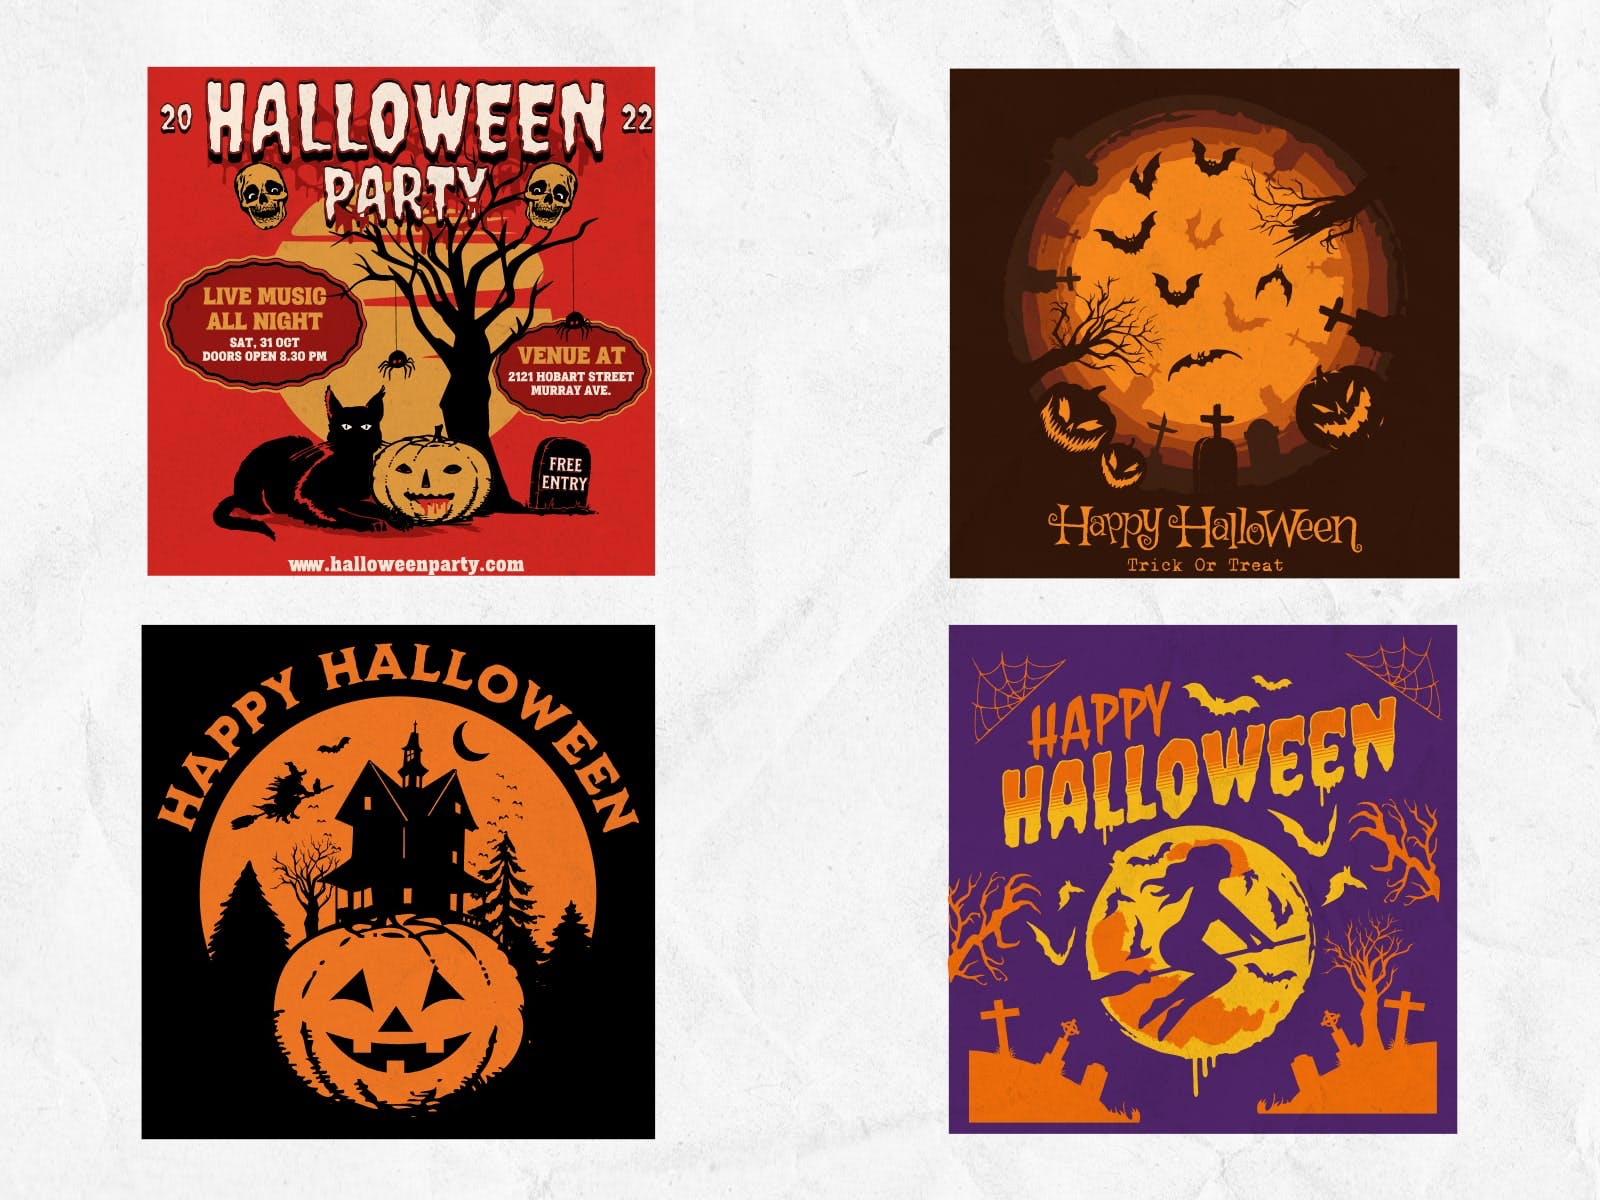 Halloween Social Media Social Post: Halloween-themed social media post designs